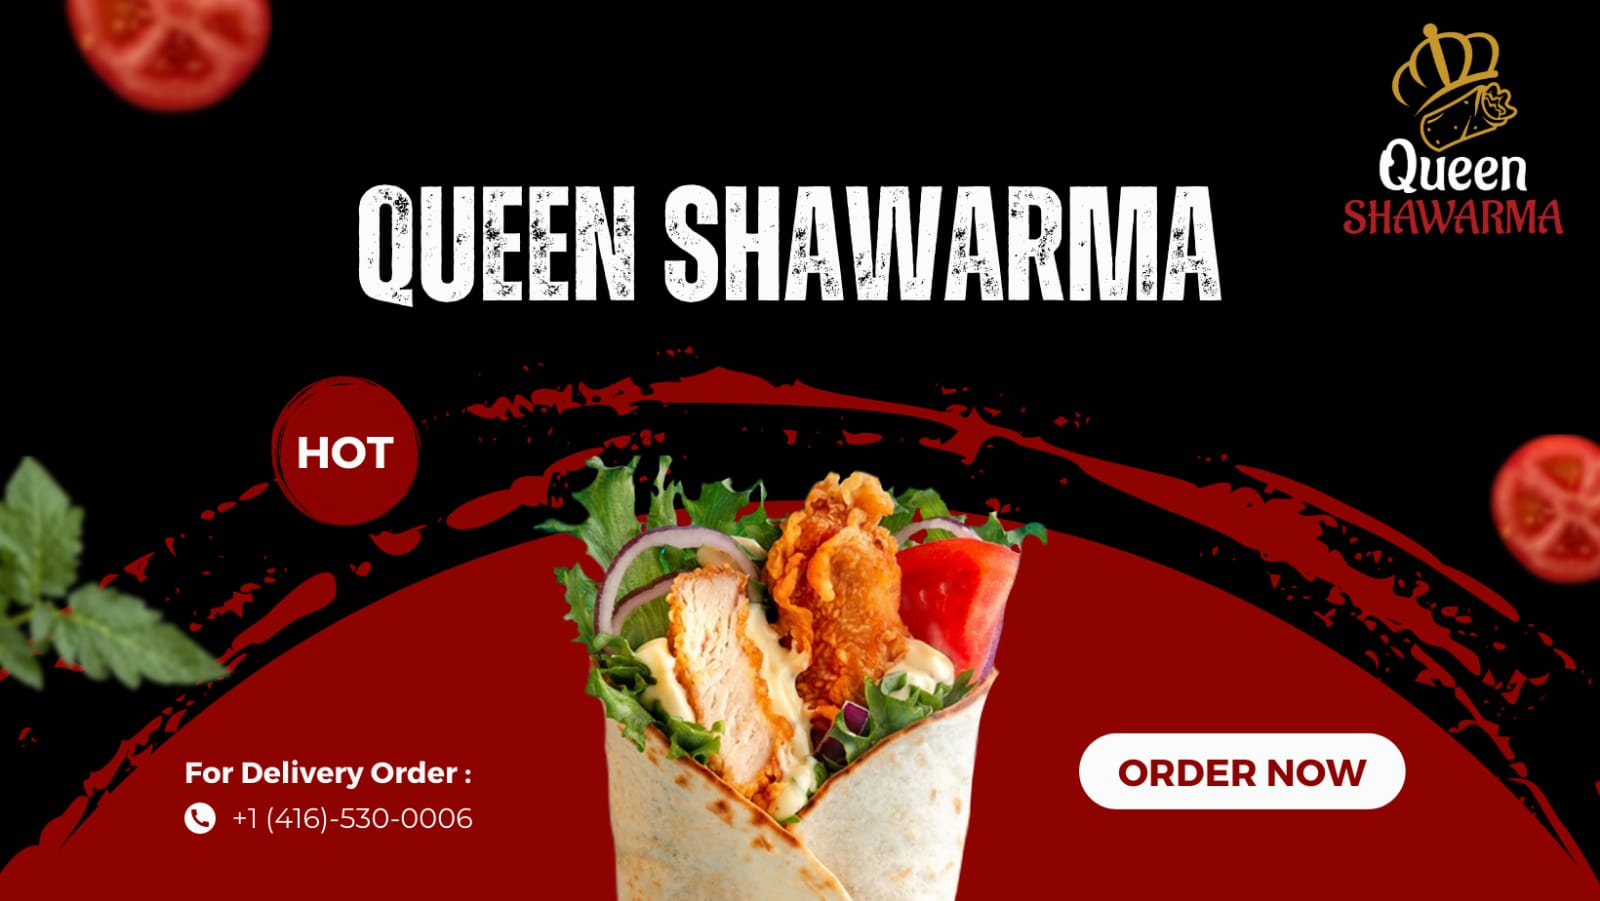 (c) Queen-shawarma.com